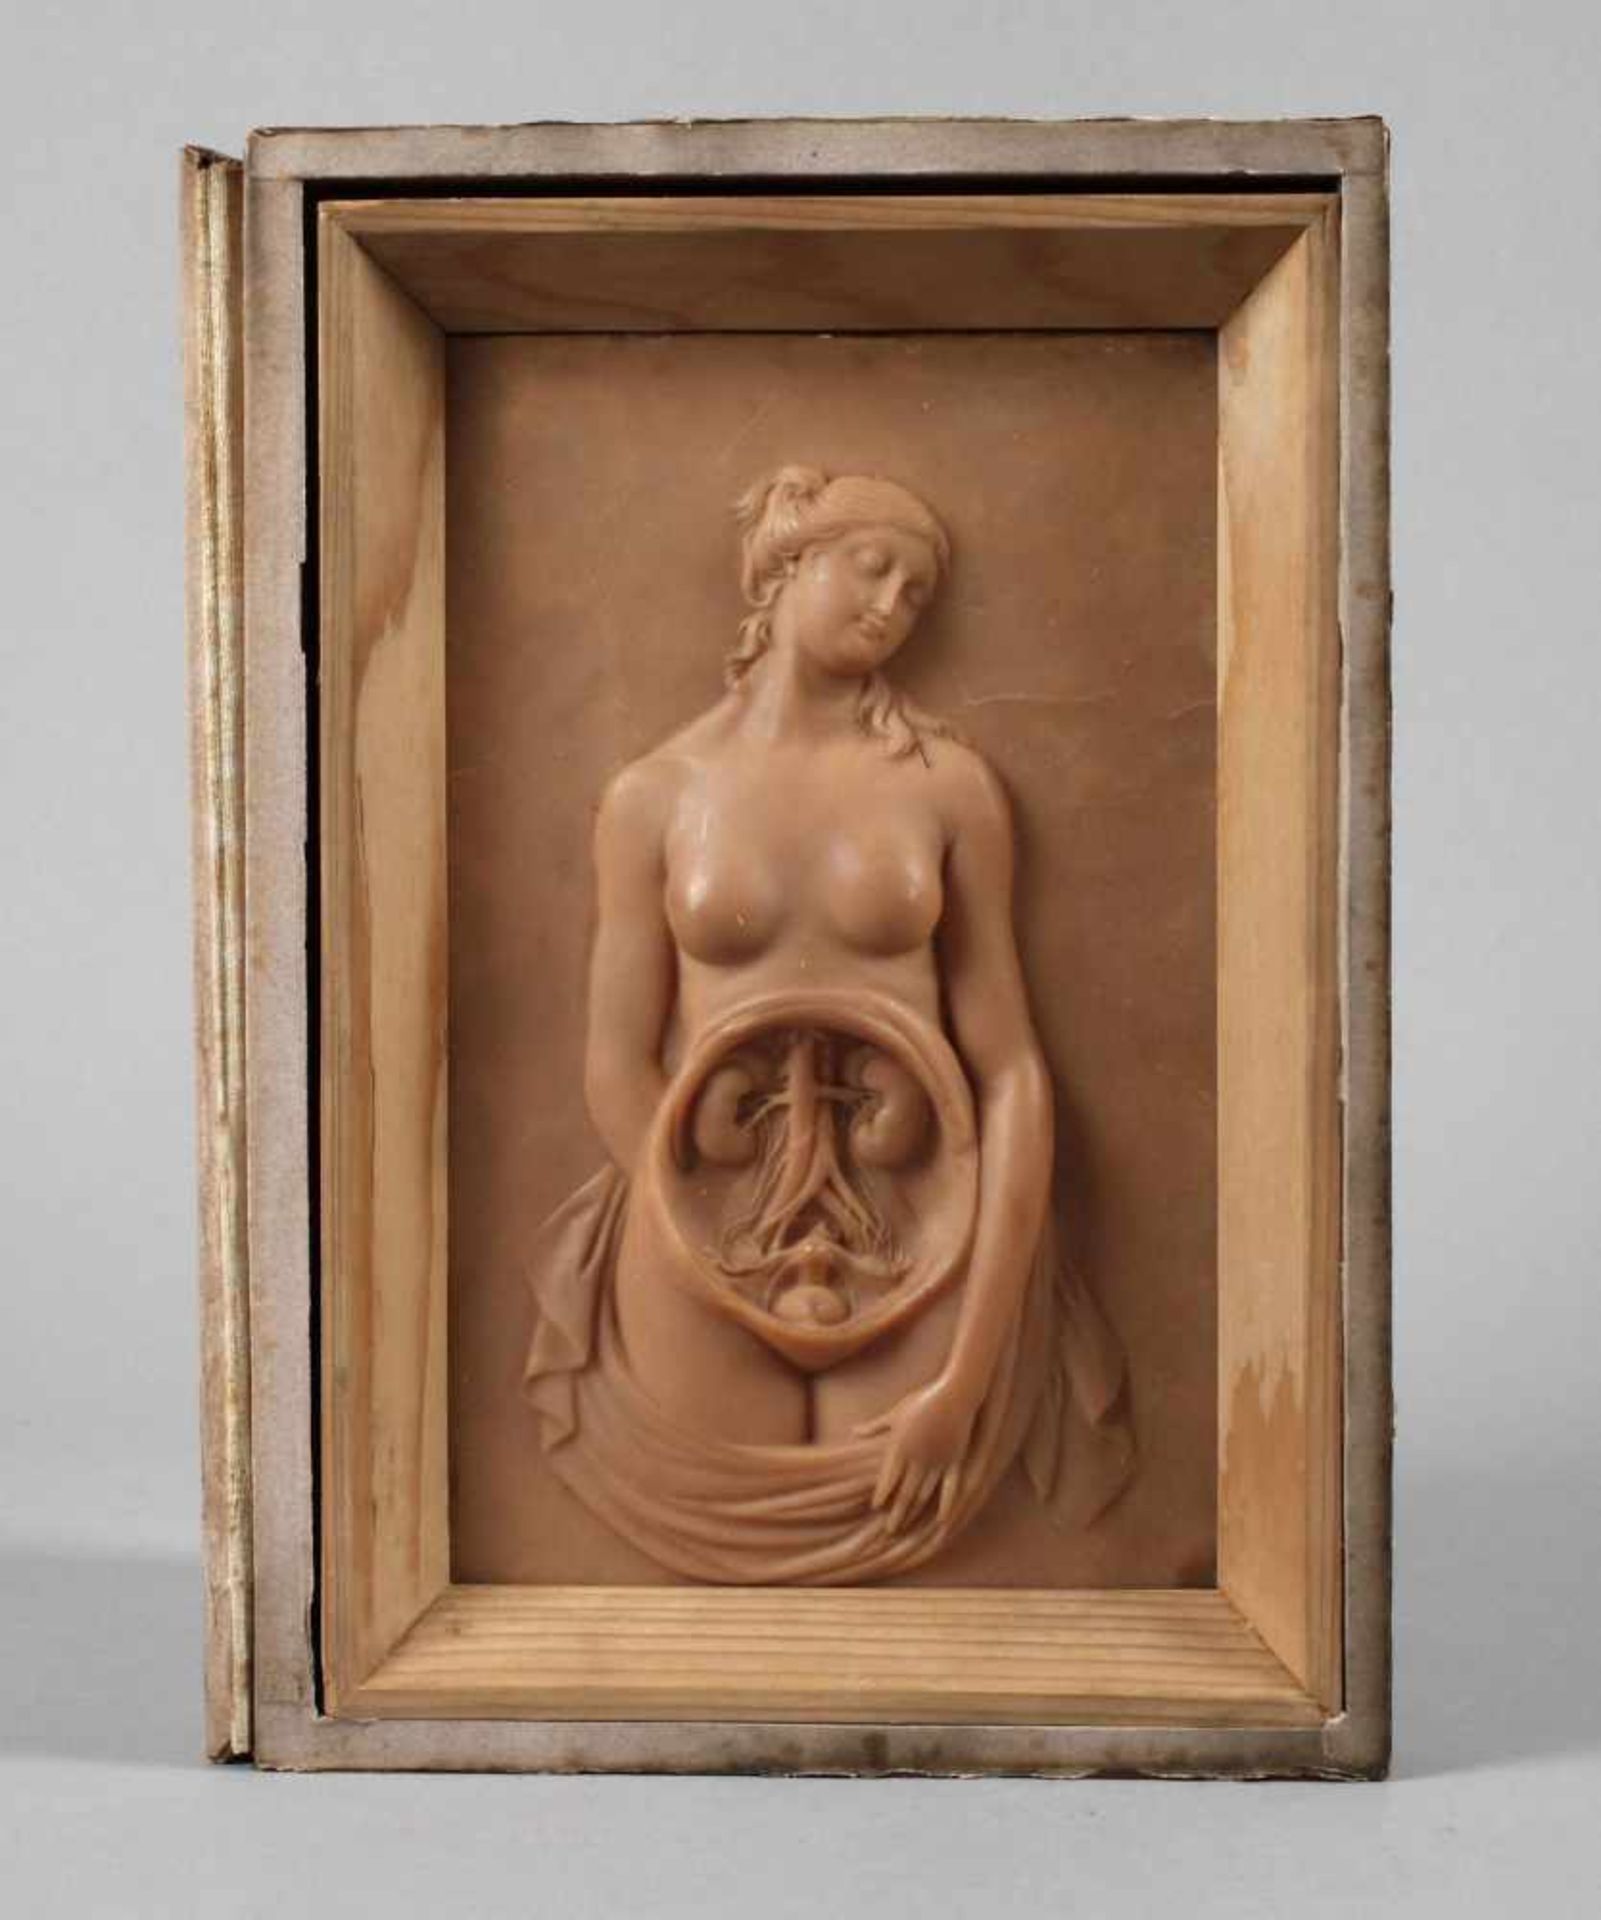 Anatomisches Modellum 1900, Wachsguss, reliefierte Darstellung eines weiblichen Aktes mit geöffneter